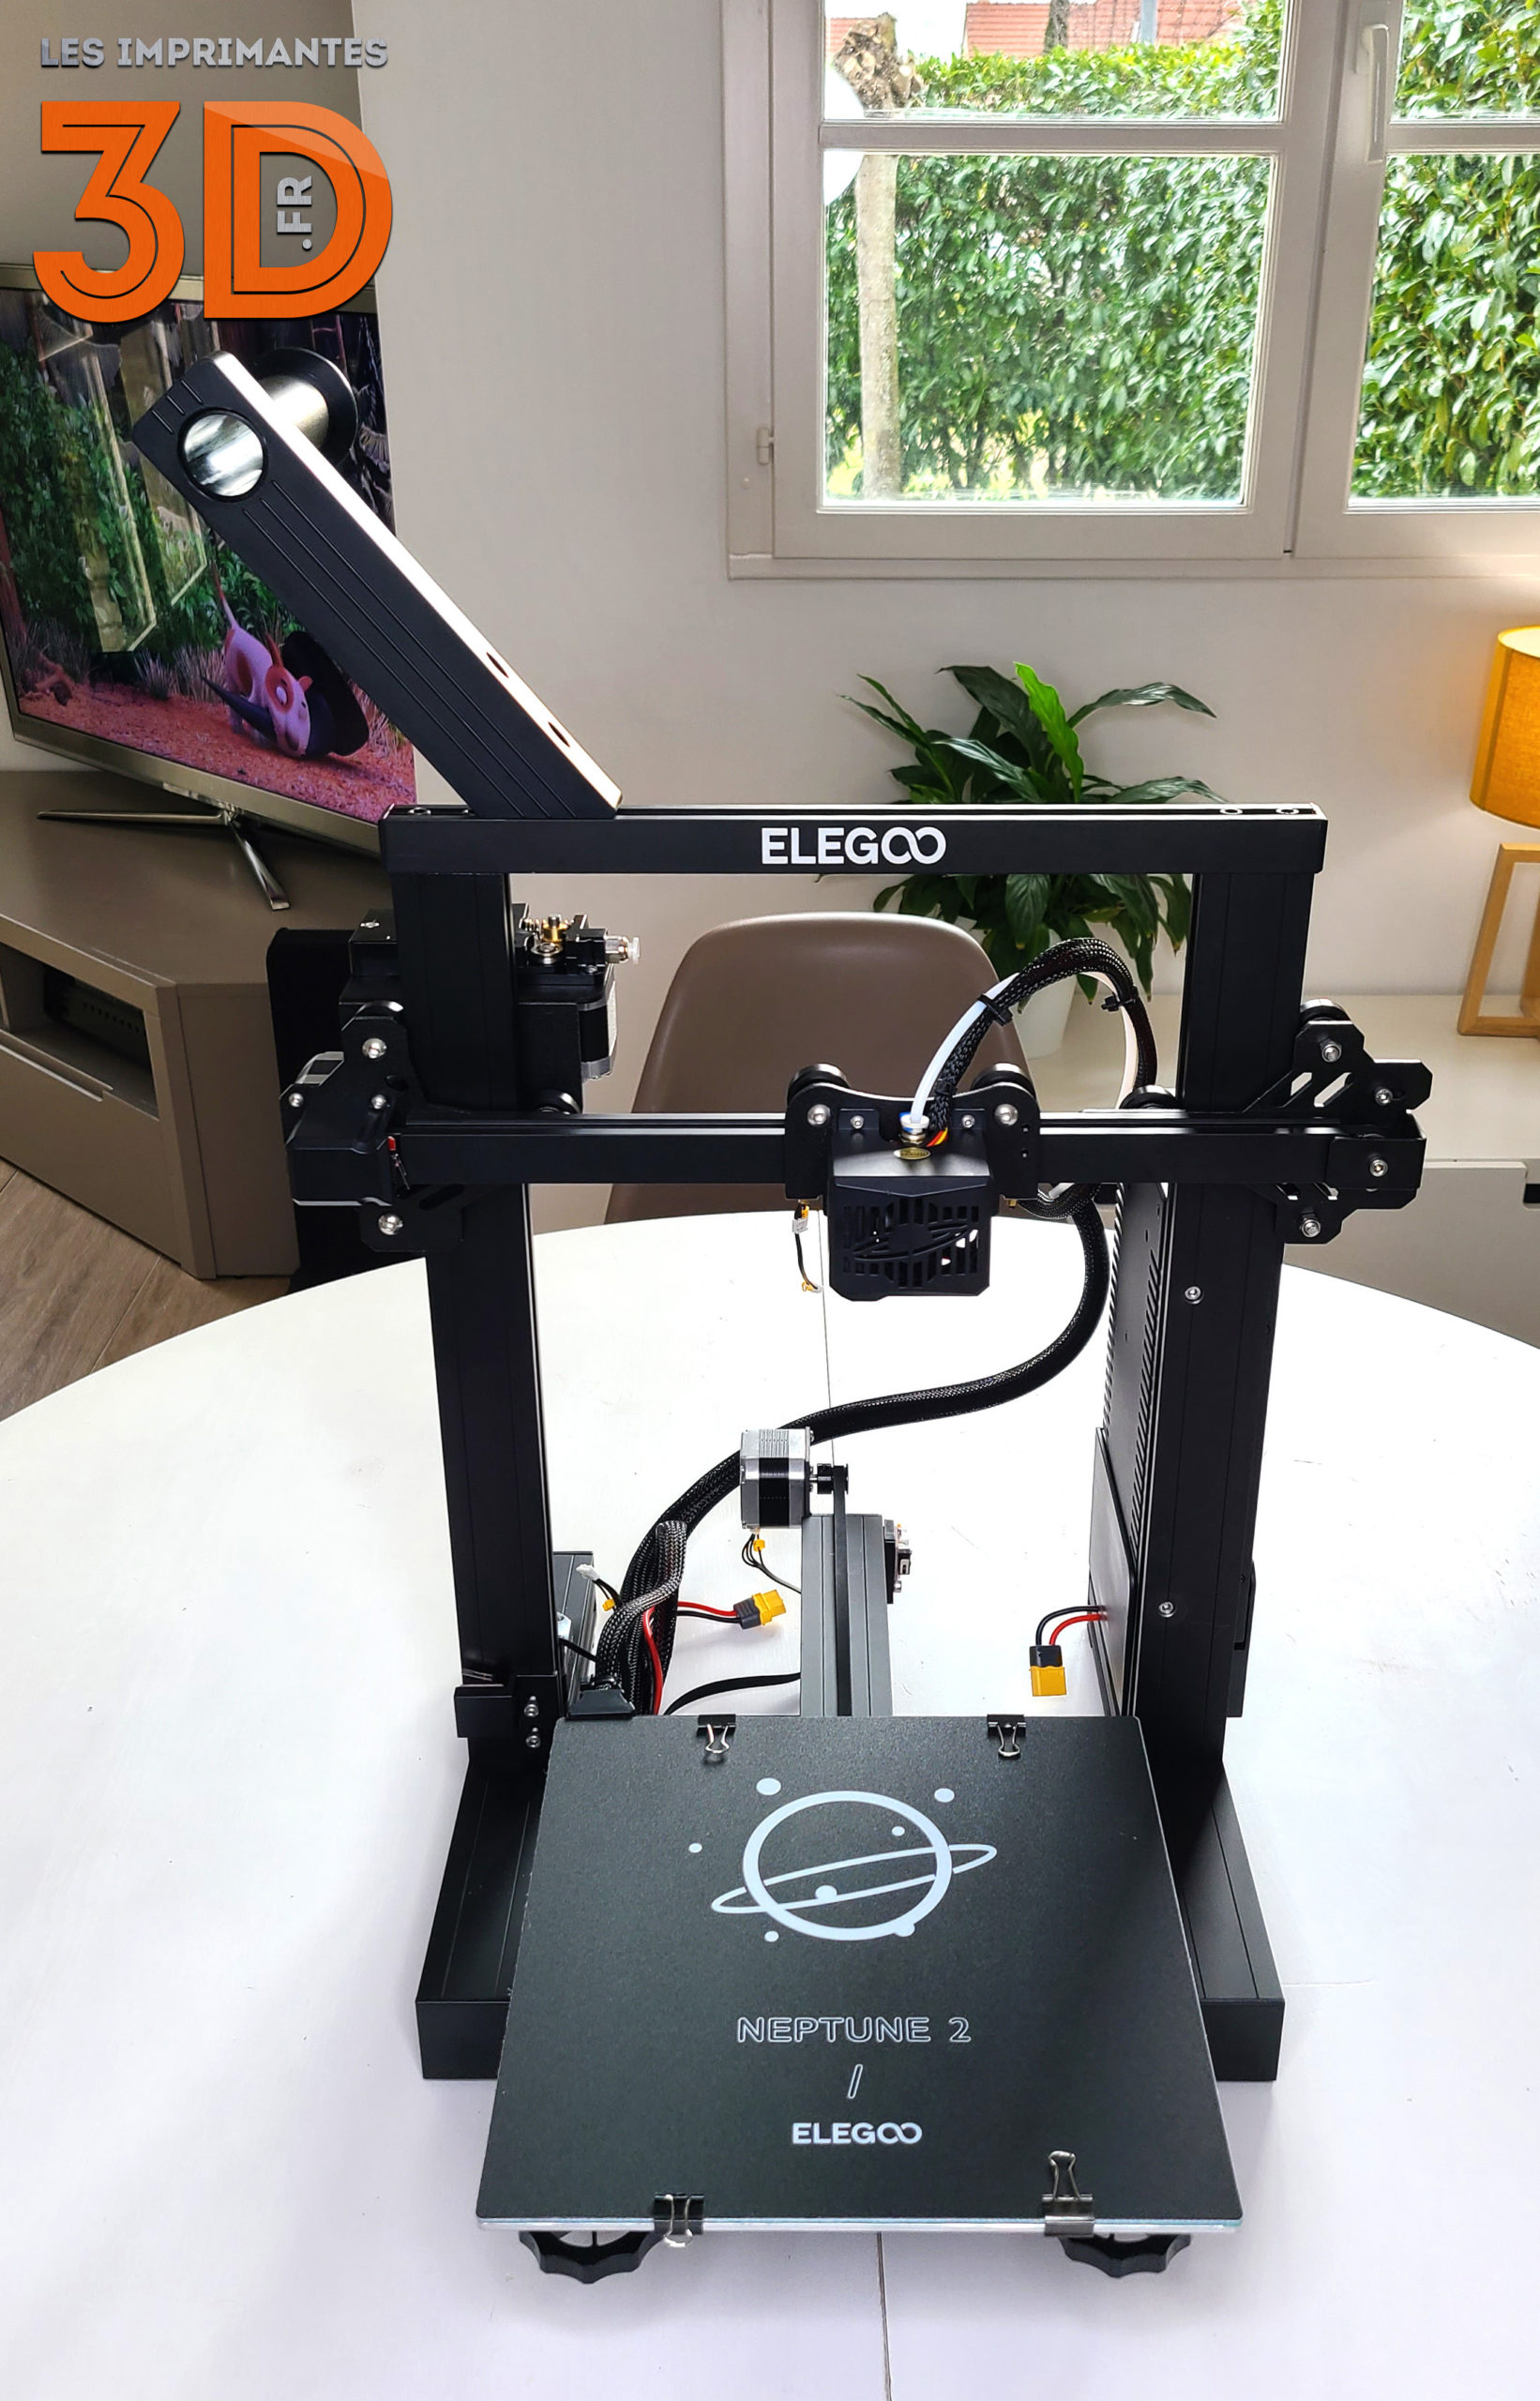 Elegoo Neptune 2, test d'une imprimante 3D pas chère et efficace !